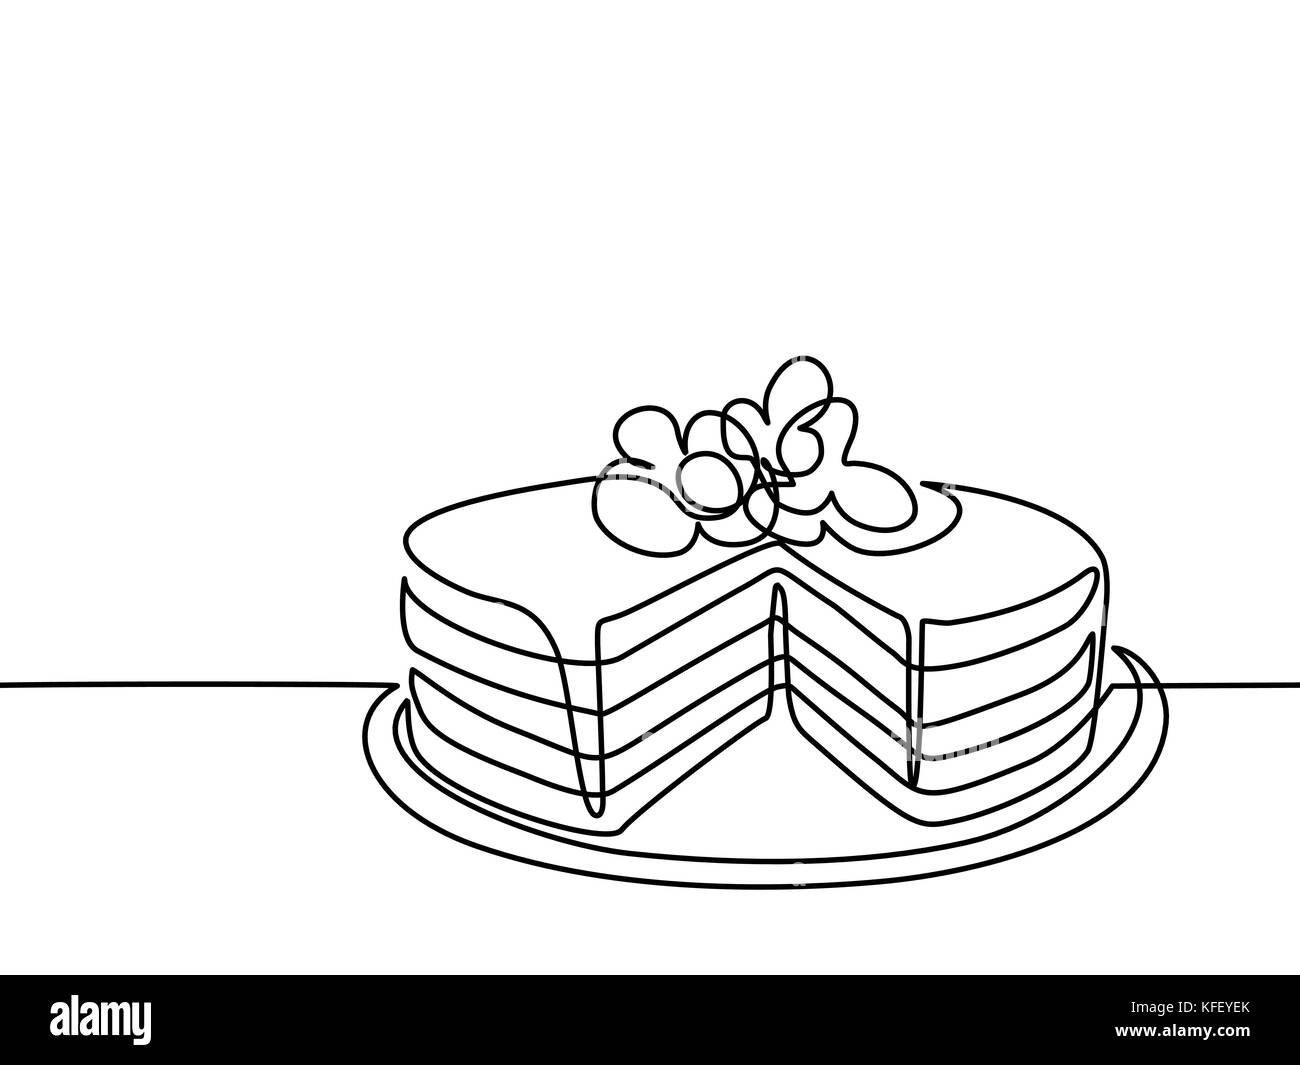 Dessin de ligne continu de grand gâteau. Illustration vecteur ligne noire sur fond blanc. Illustration de Vecteur